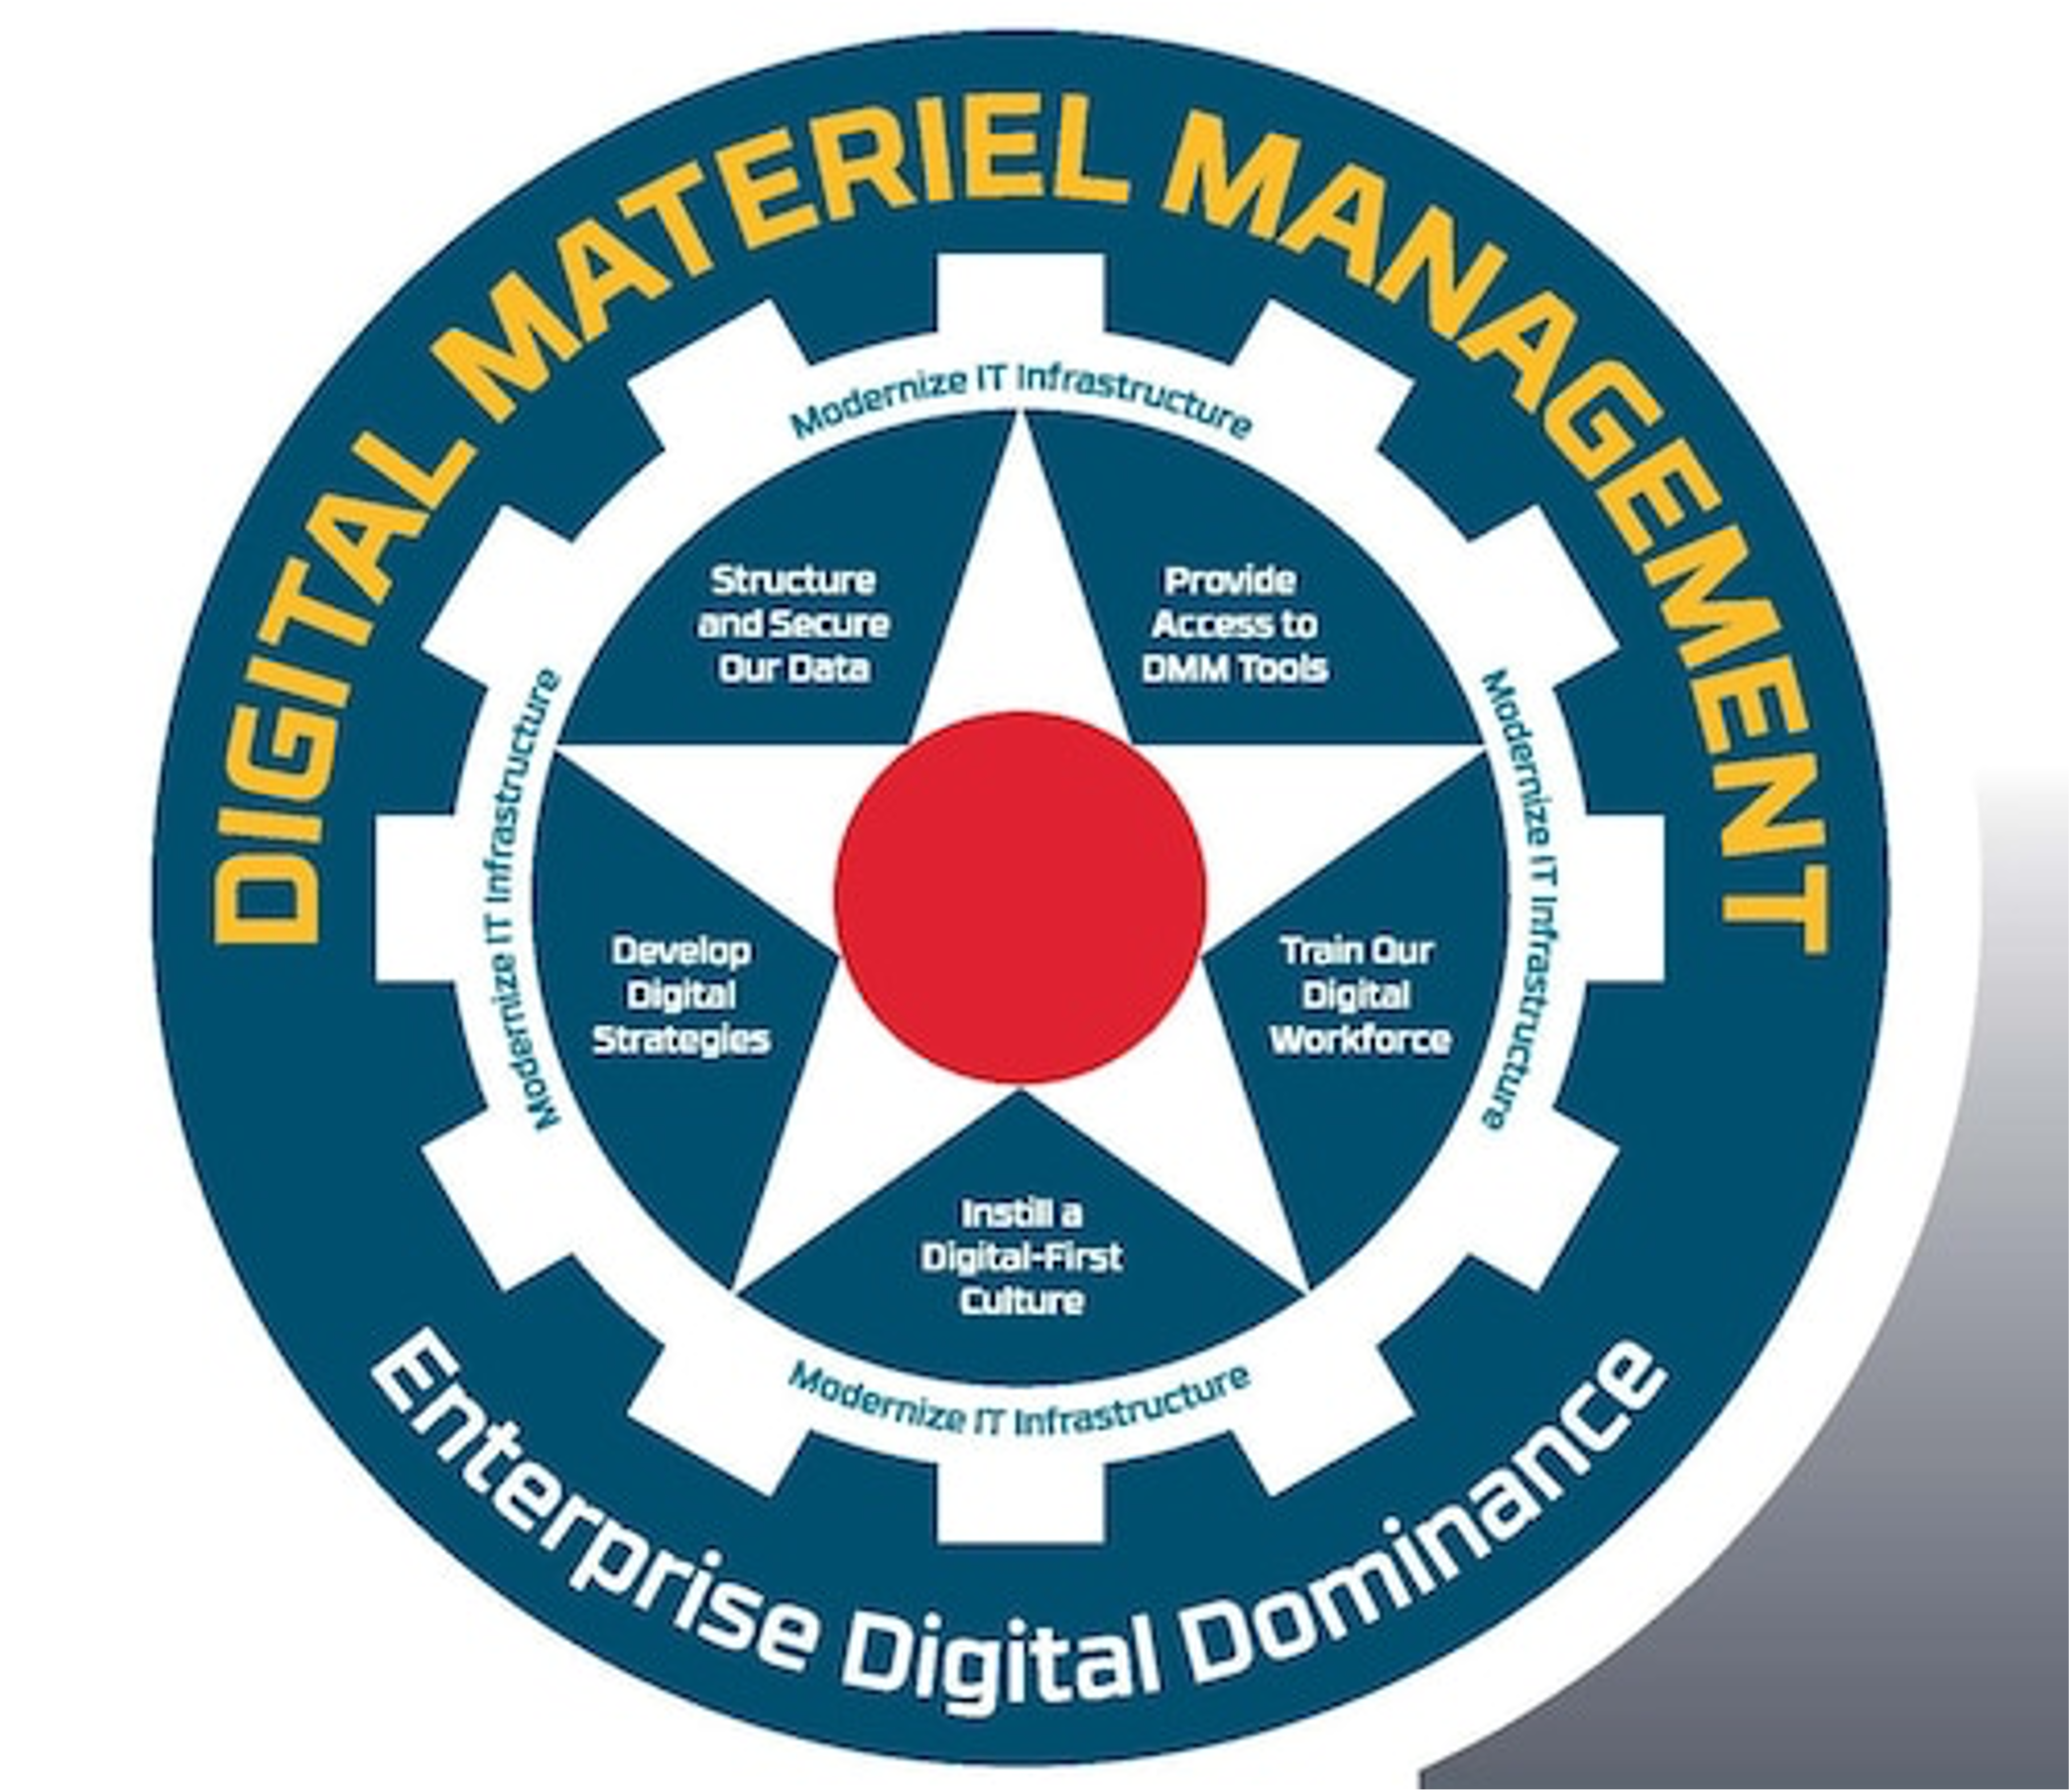 Digital Management (DM)/Digital Transformation (DT) – We Need To Improve!